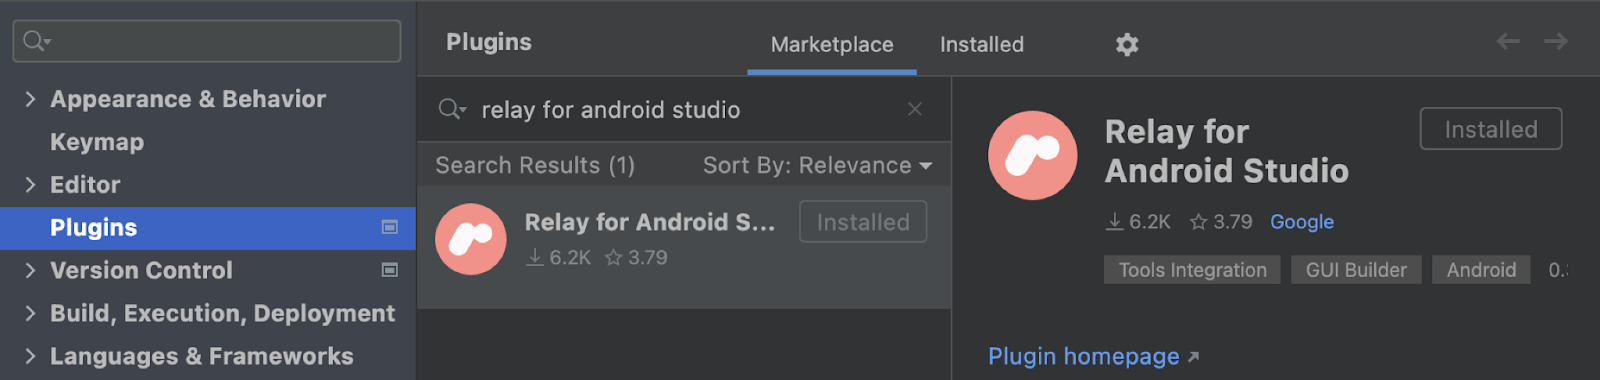 Android Studio plugin settings